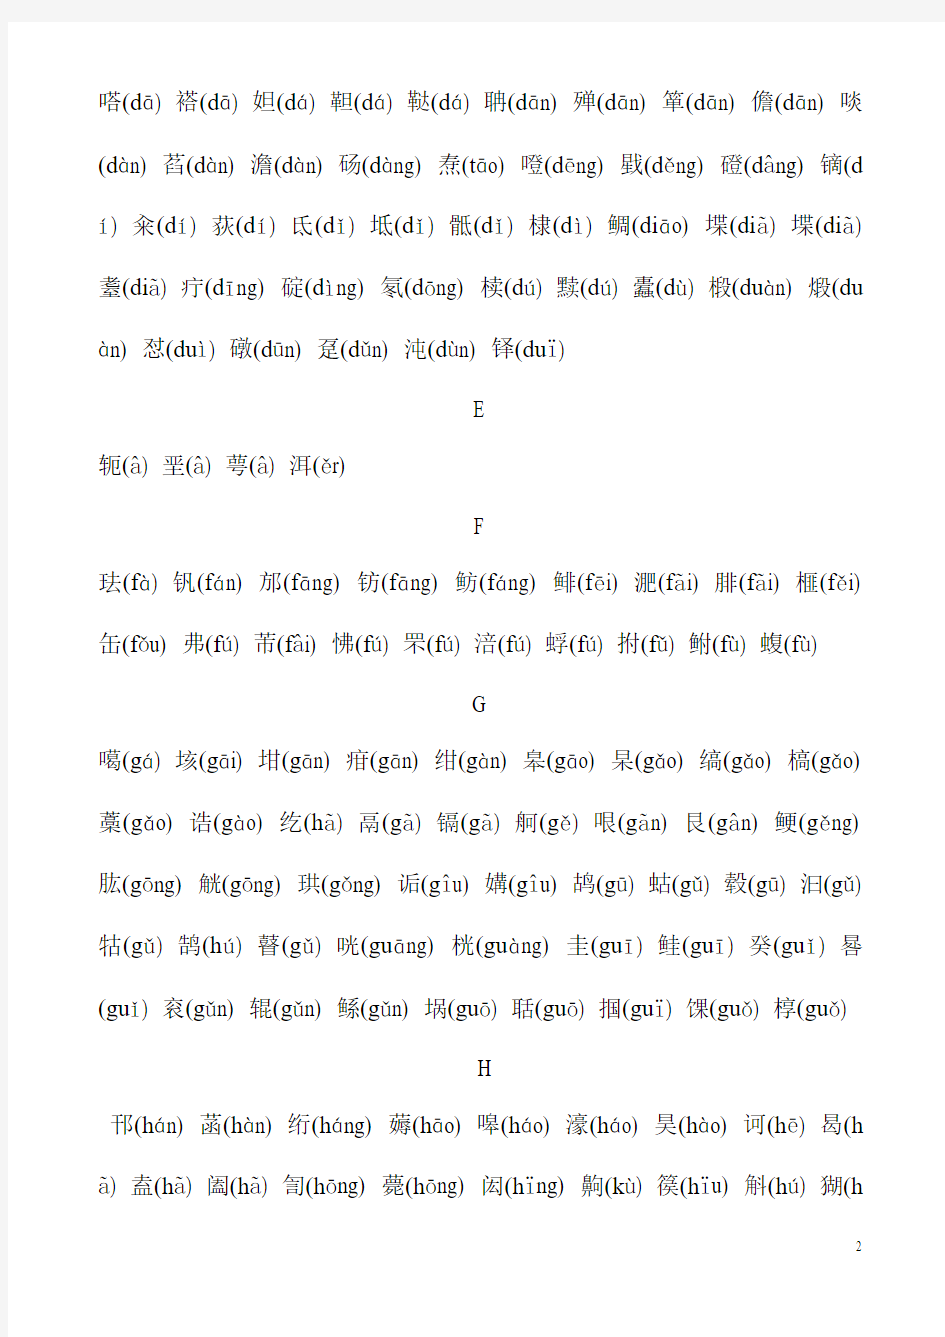 汉字应用水平测试字表(丙表) 带拼音并按音序排序